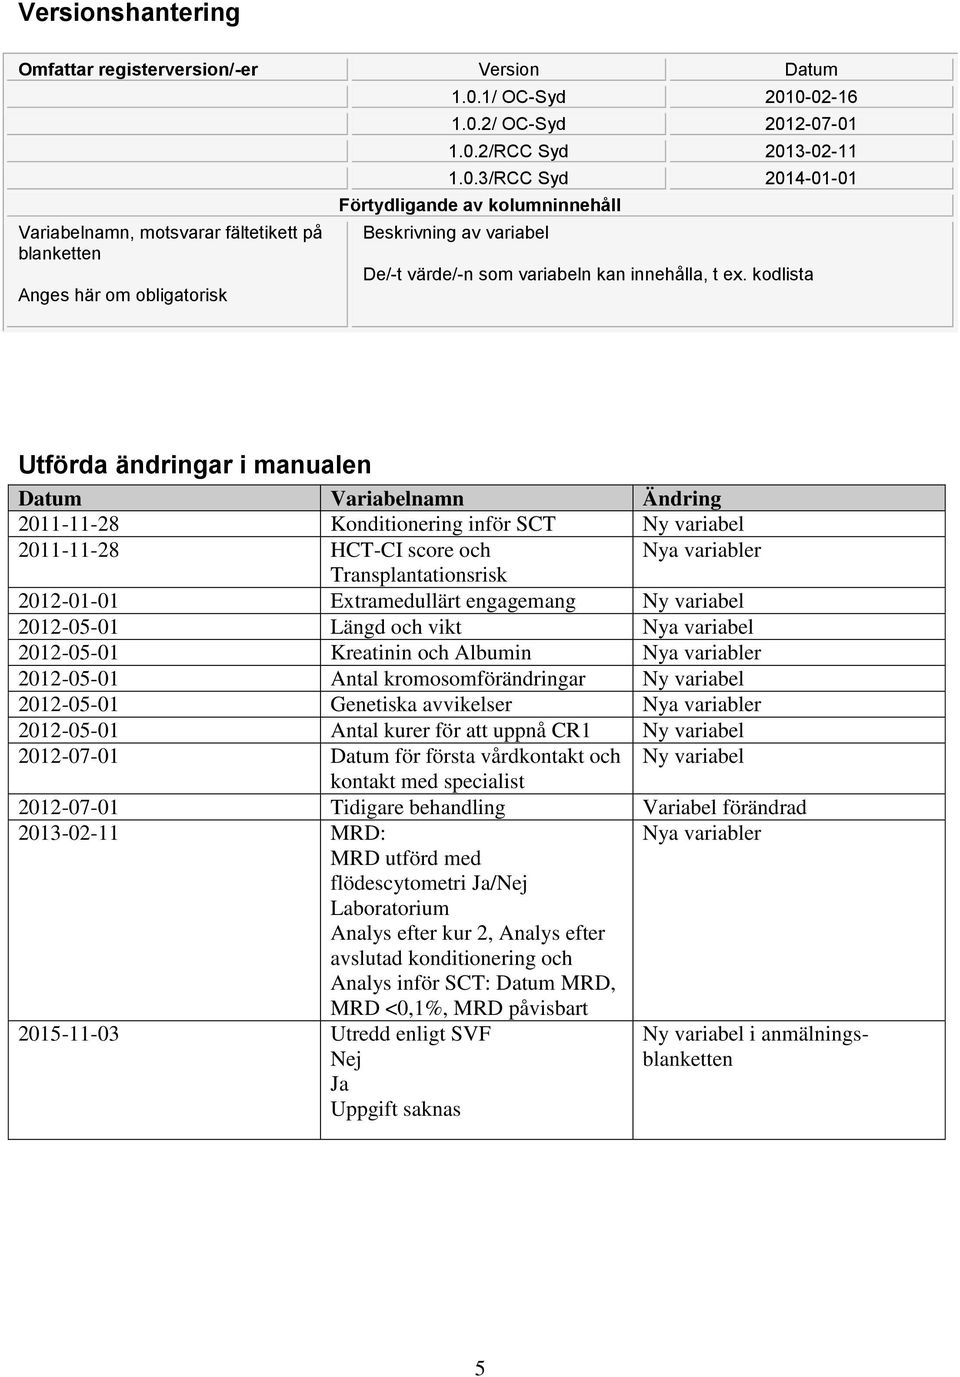 kodlista Utförda ändringar i manualen Datum Variabelnamn Ändring 2011-11-28 Konditionering inför SCT Ny variabel 2011-11-28 HCT-CI score och Nya variabler Transplantationsrisk 2012-01-01